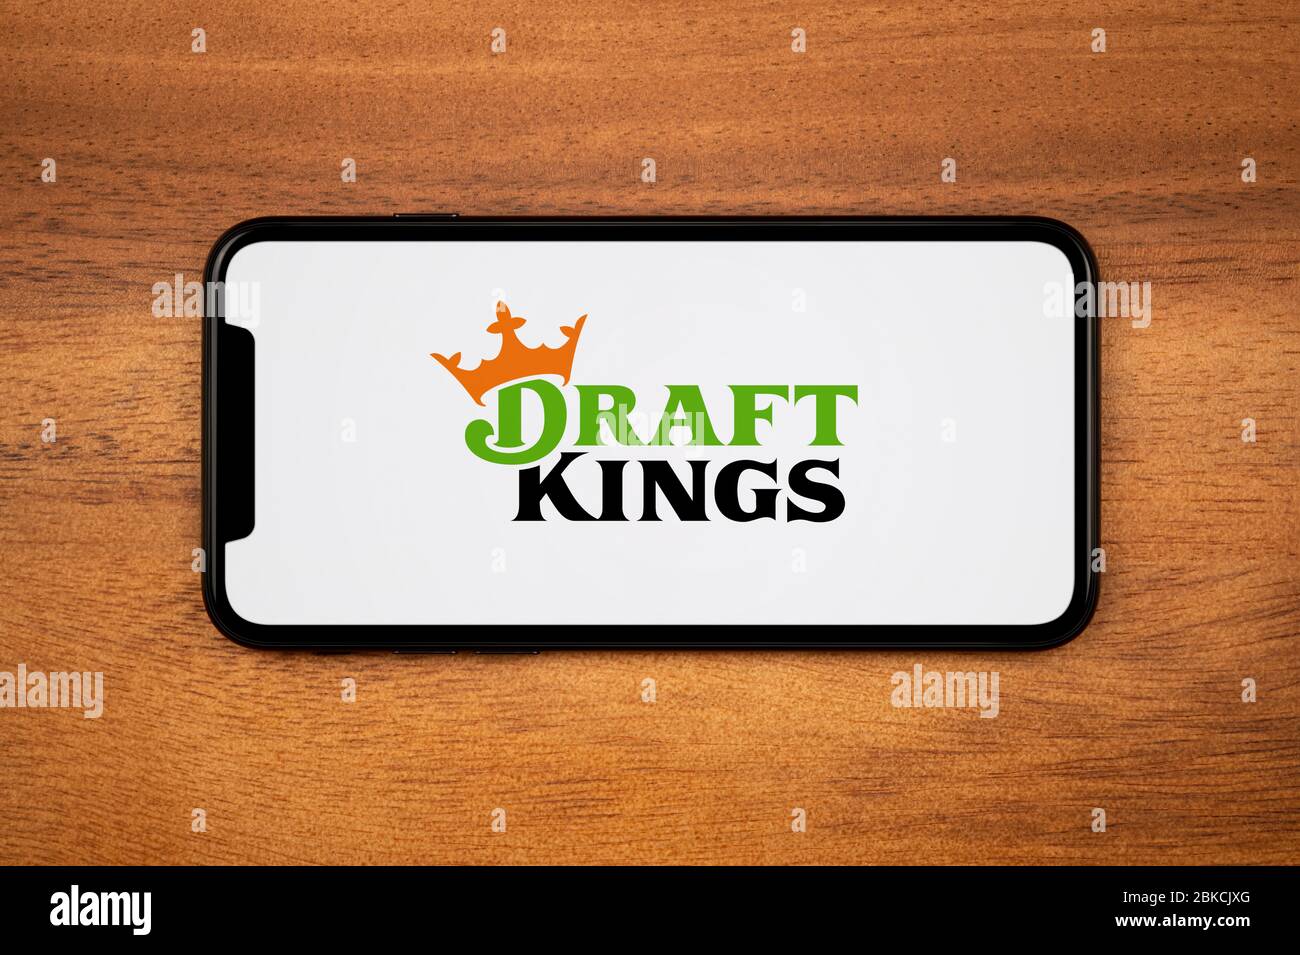 Un smartphone affichant le logo Draft Kings repose sur une table en bois ordinaire (usage éditorial uniquement). Banque D'Images